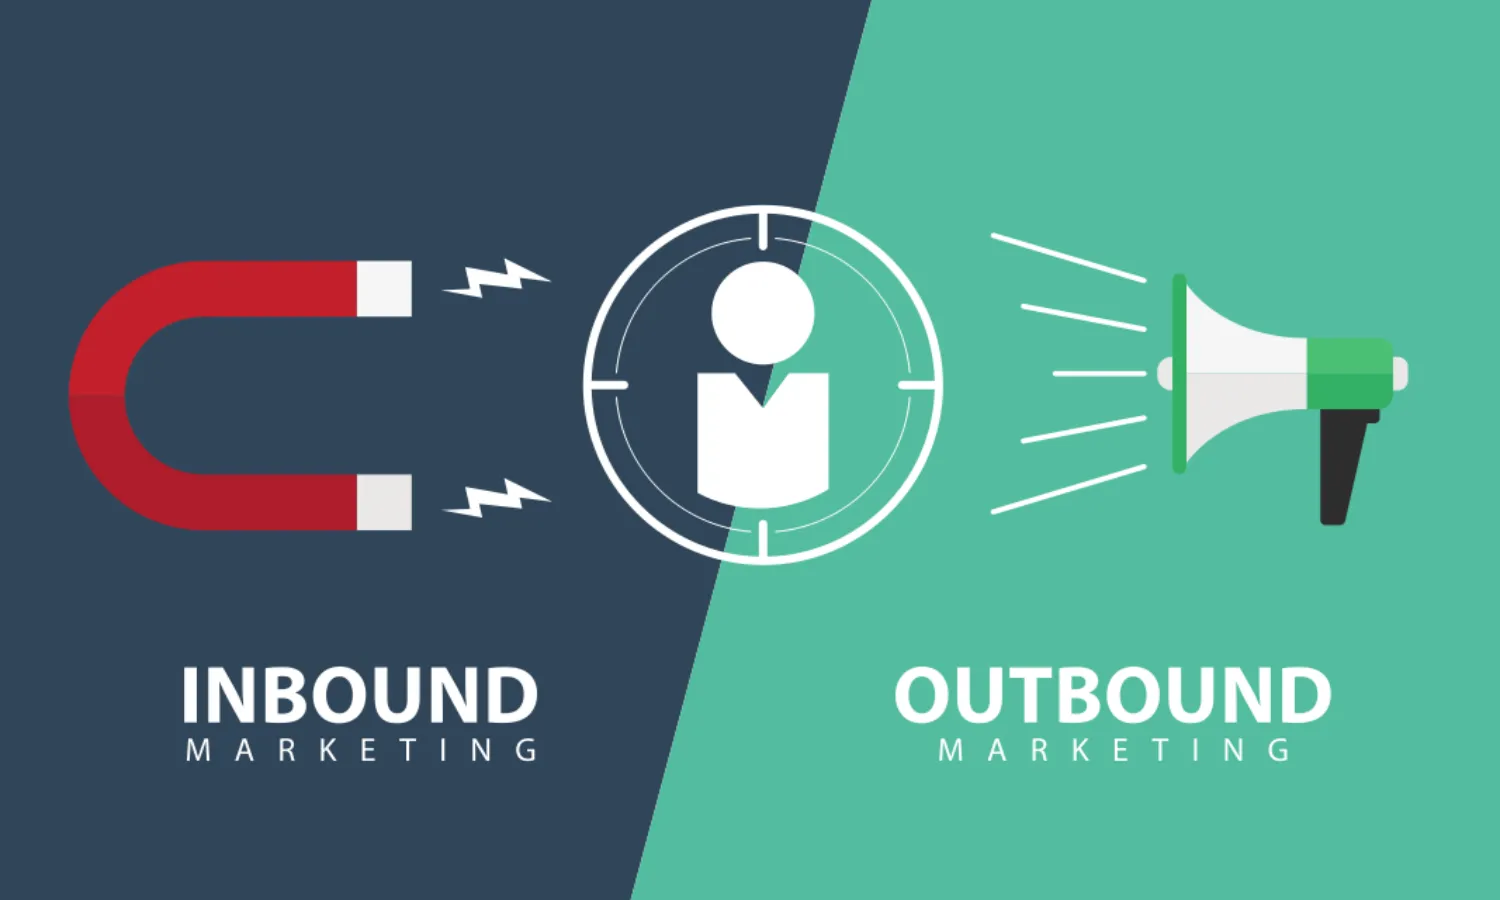 Content inbound vs outbound marketing